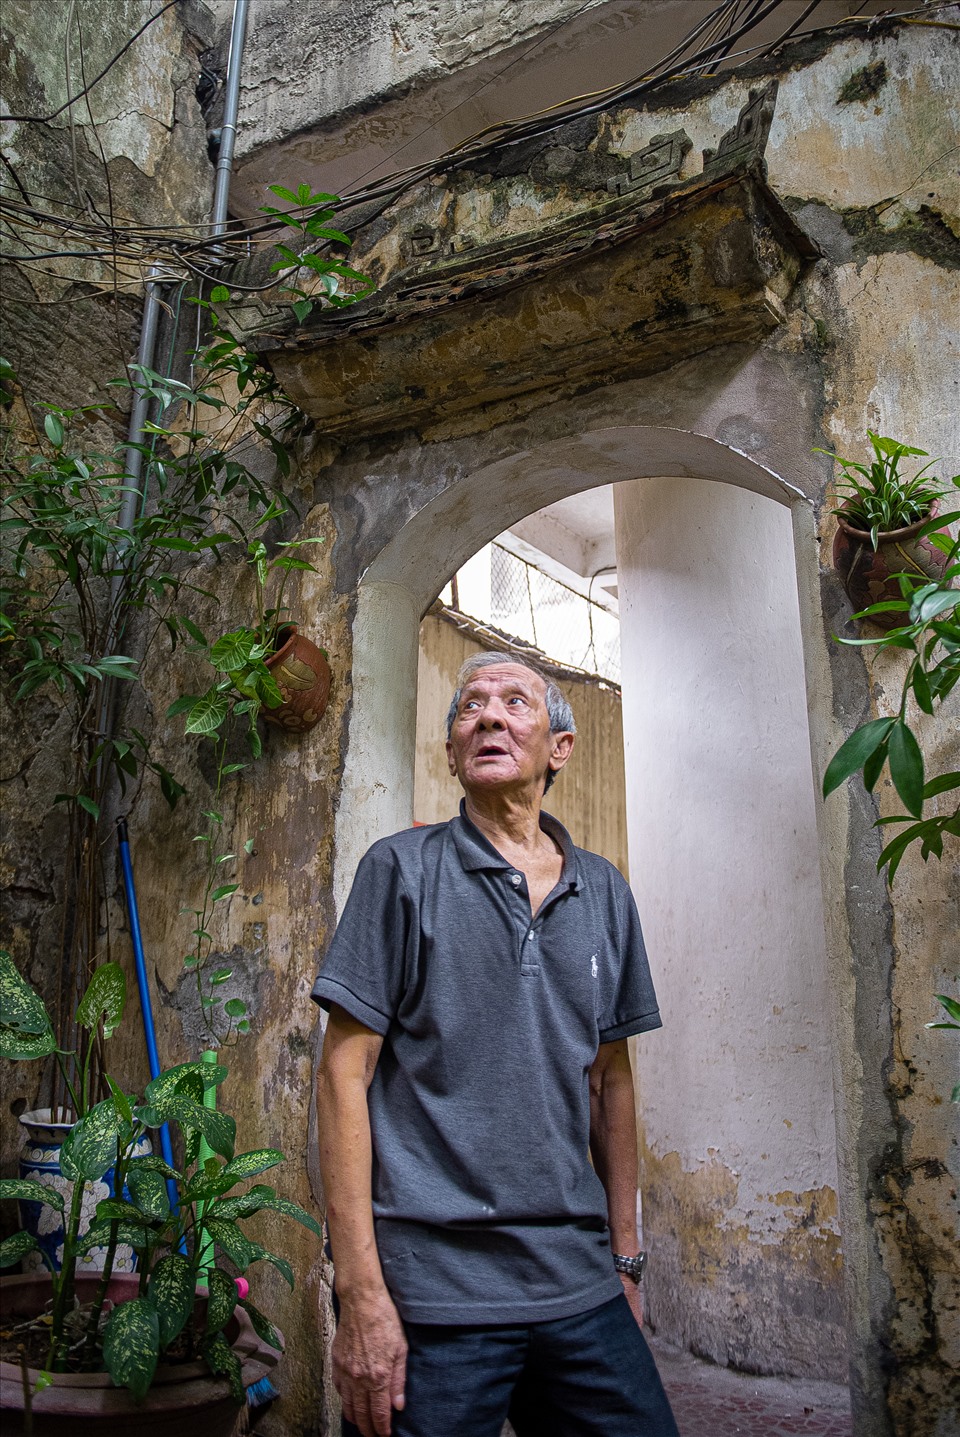 Tiếp đón chúng tôi là ông Phạm Ngọc Hải (74 tuổi) - con trai út của vợ chồng cụ Phạm Văn Thanh - Phạm Thị Tề. Ông Hải cho biết, sau nhiều lần vật đổi sao dời, khu nhà vườn tổng diện tích gần 600m2 nay chỉ còn gần 300m2.